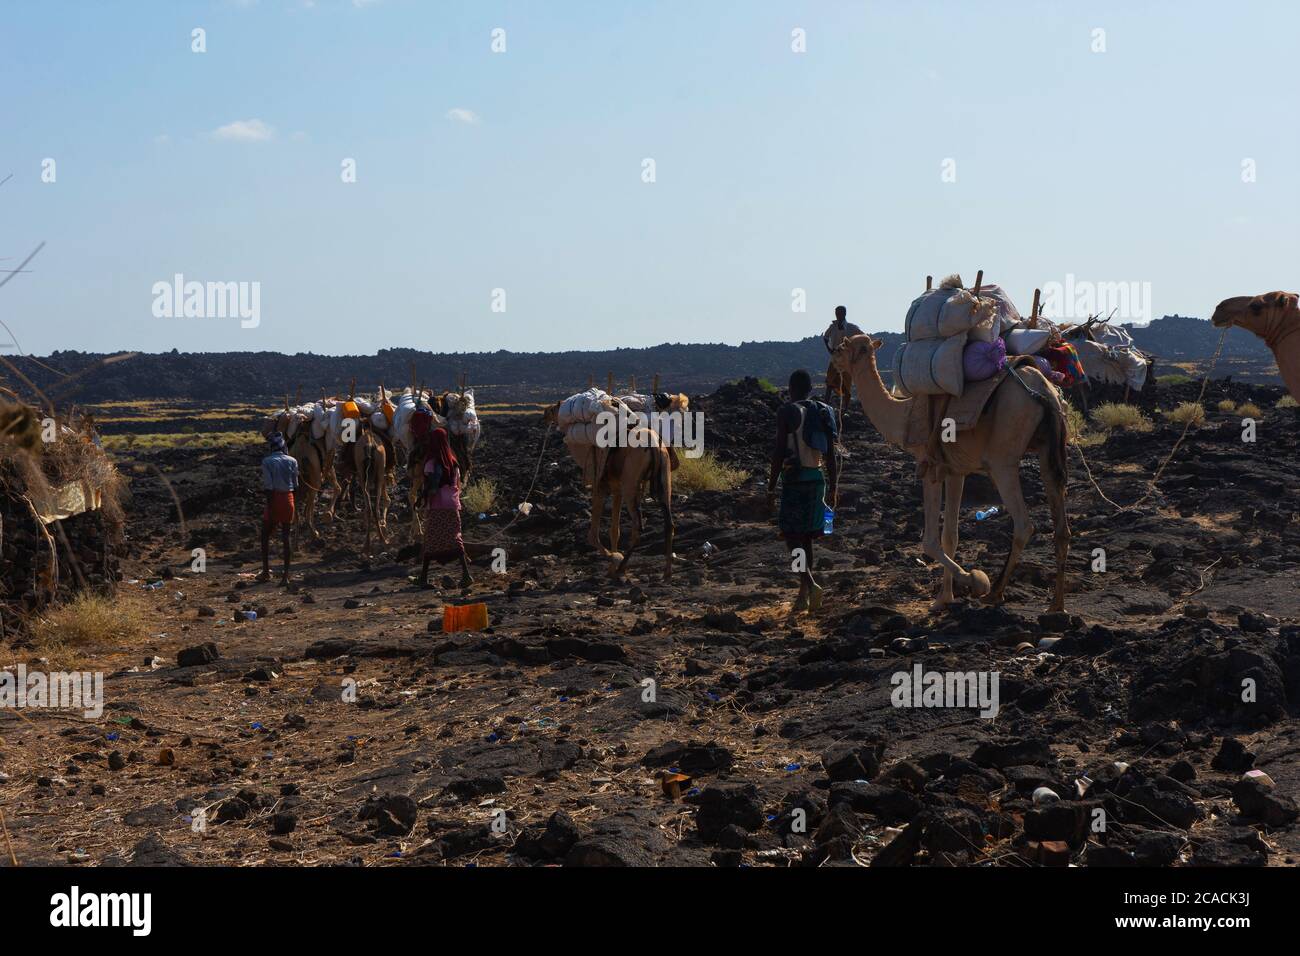 ERTA Ale, Ethiopie - Nov 2018: Caravane de chameaux guidée par les Afar locaux, dans le désert Banque D'Images